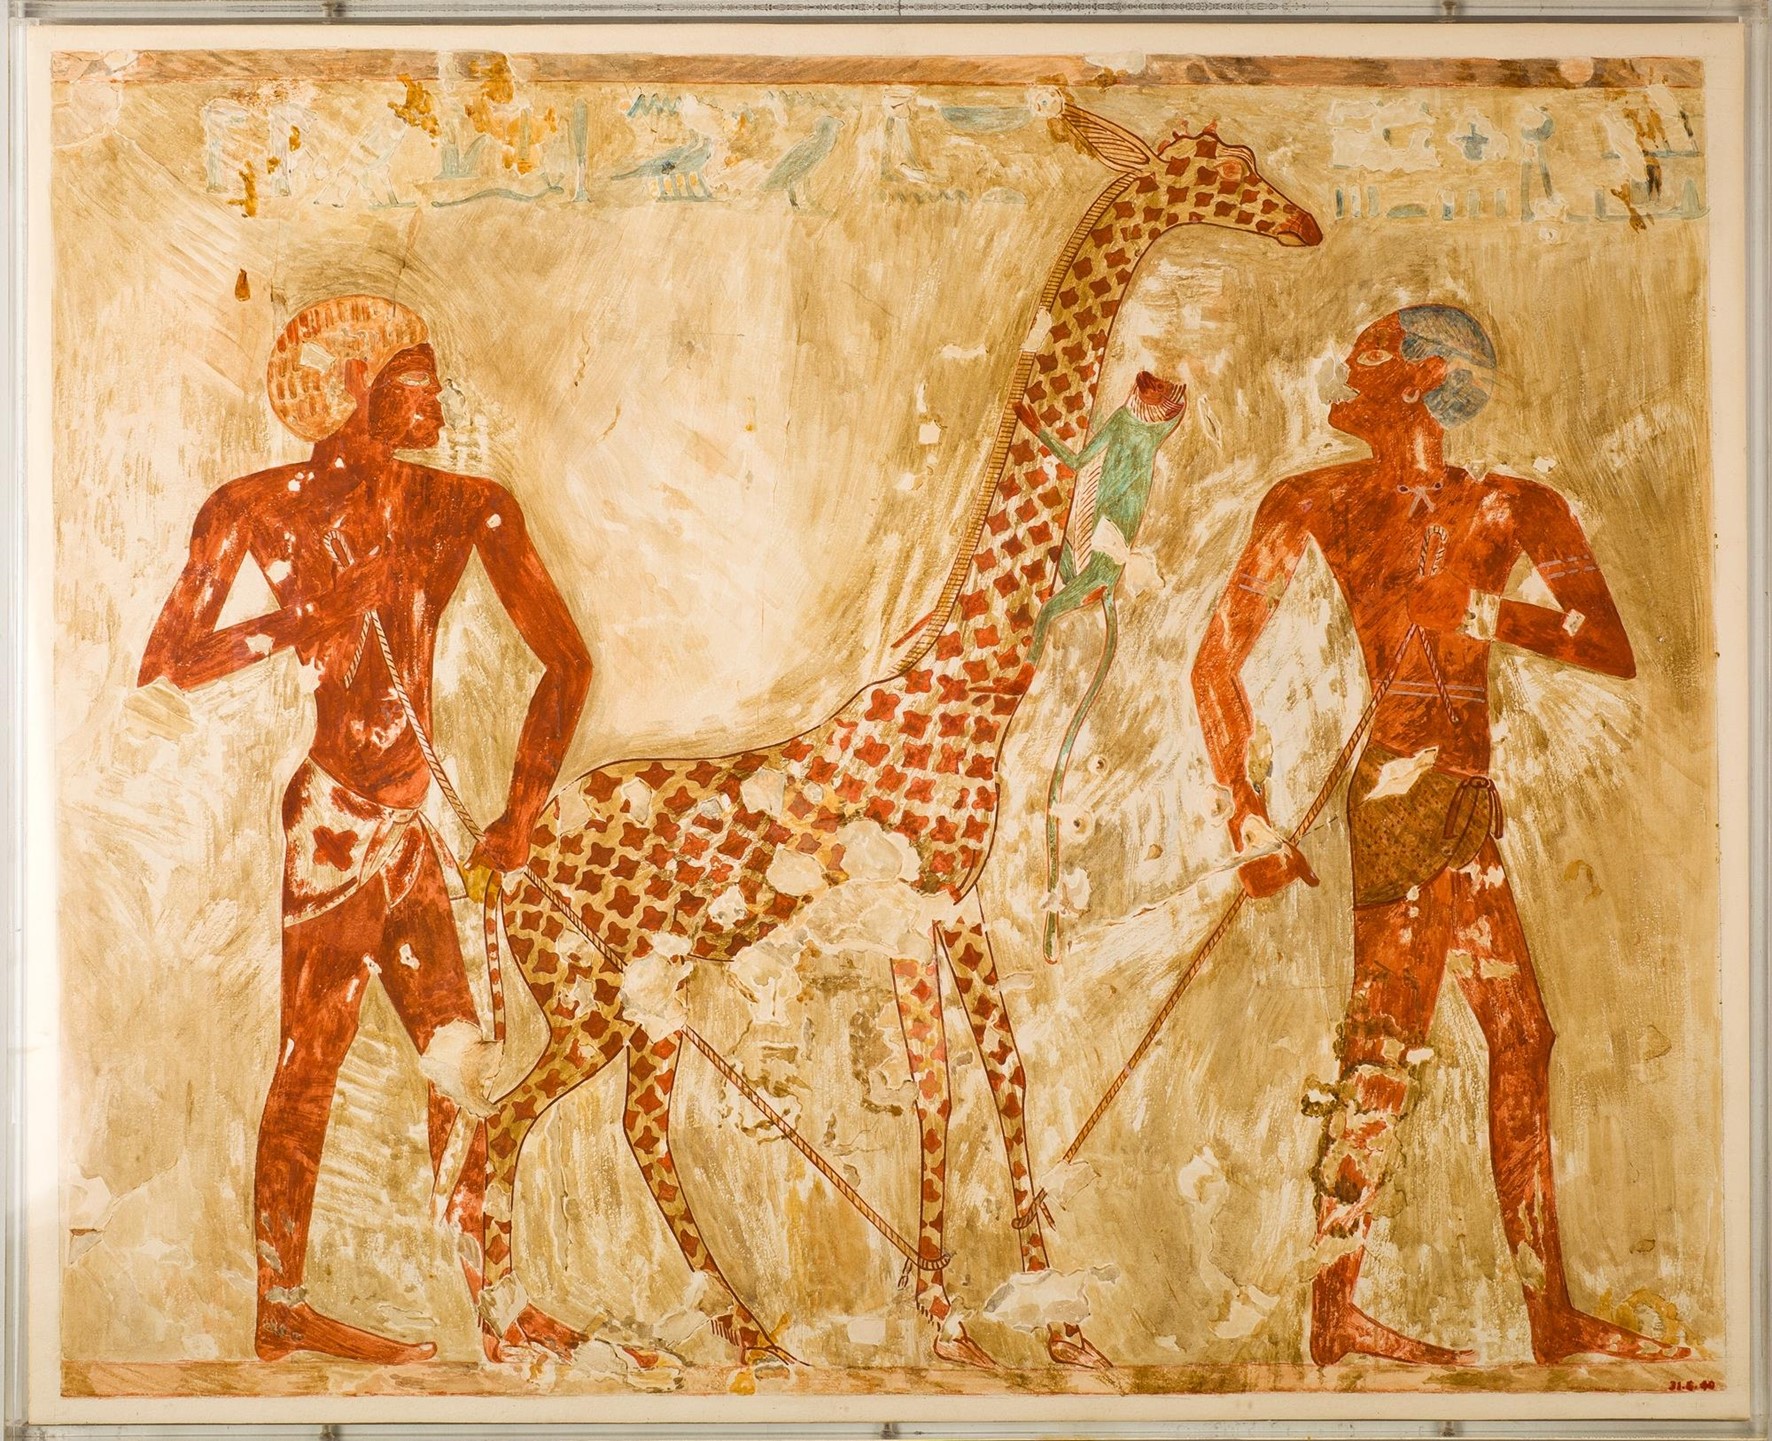 Núbios com uma girafa e um macaco. Reprodução da pintura da tumba tebana TT100, do vizir egípcio Rekhmira. A imagem encontra-se em domínio público. Disponível em: https://www.metmuseum.org/art/collection/search/544613